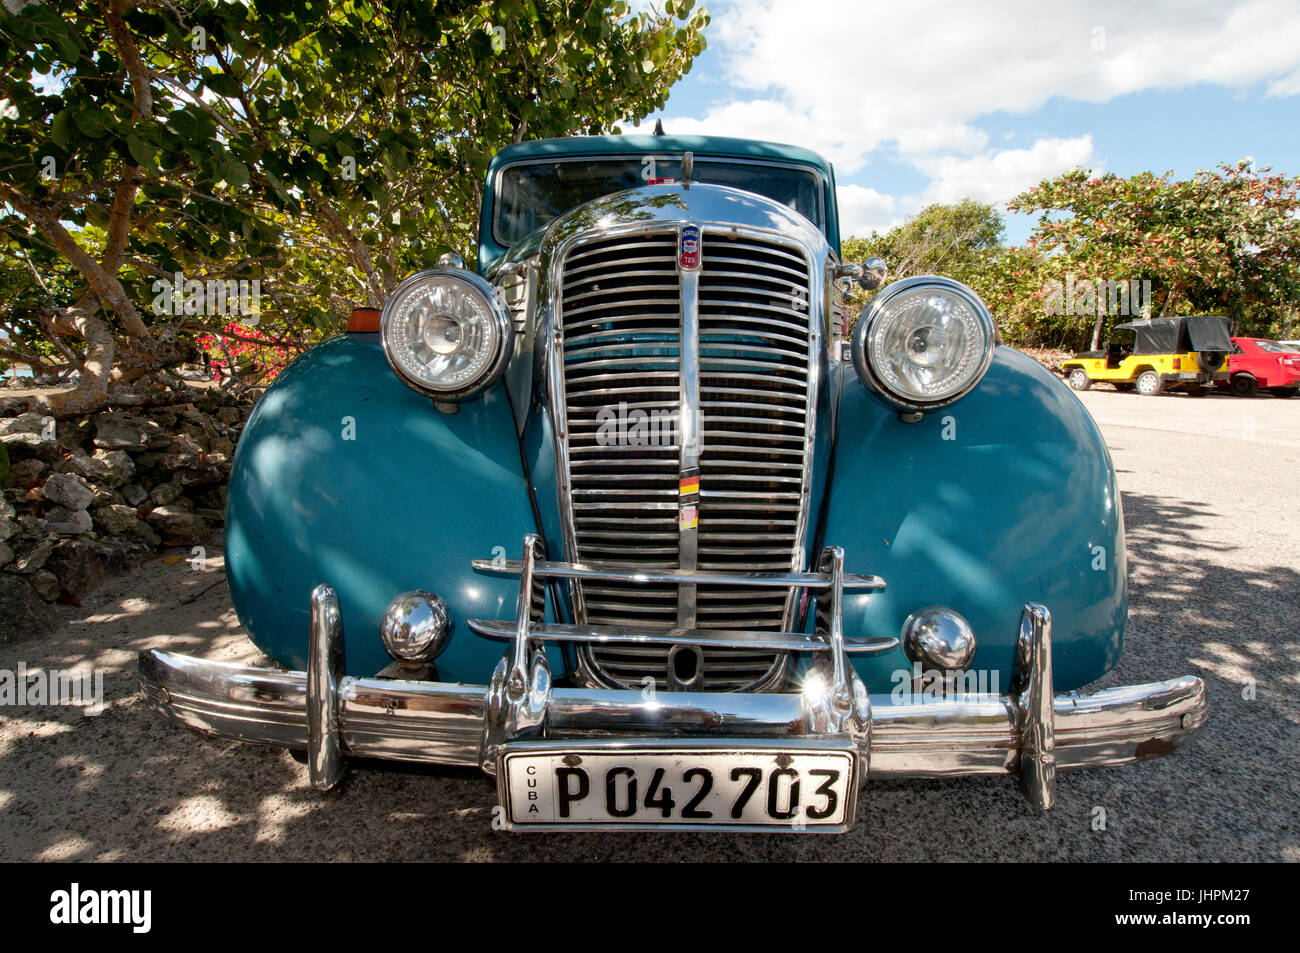 Nach dem Krieg Morris zehn (eine mittlere britische Auto aus 1932-1948) in Kuba Stockfoto